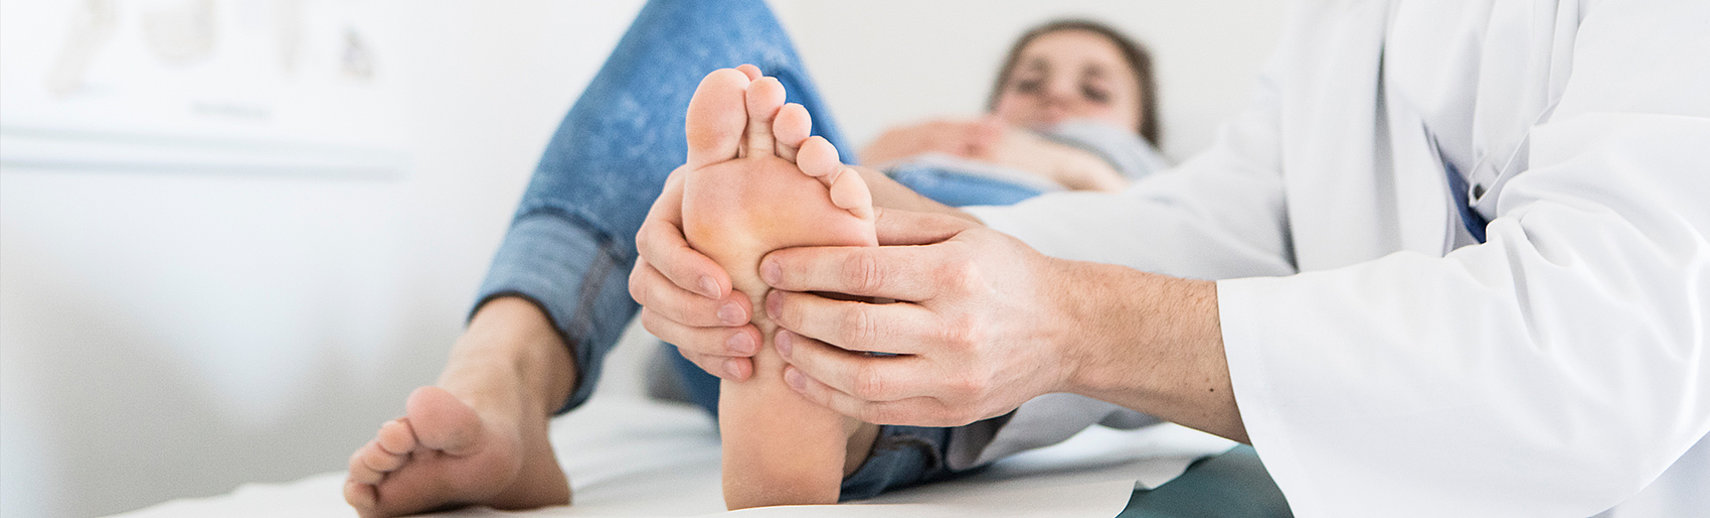 Ob Fußfehlstellung, Sportunfall oder Verschleißerkrankung – wir beraten Sie gerne zu verschiedenen Behandlungsmöglichkeiten.  [